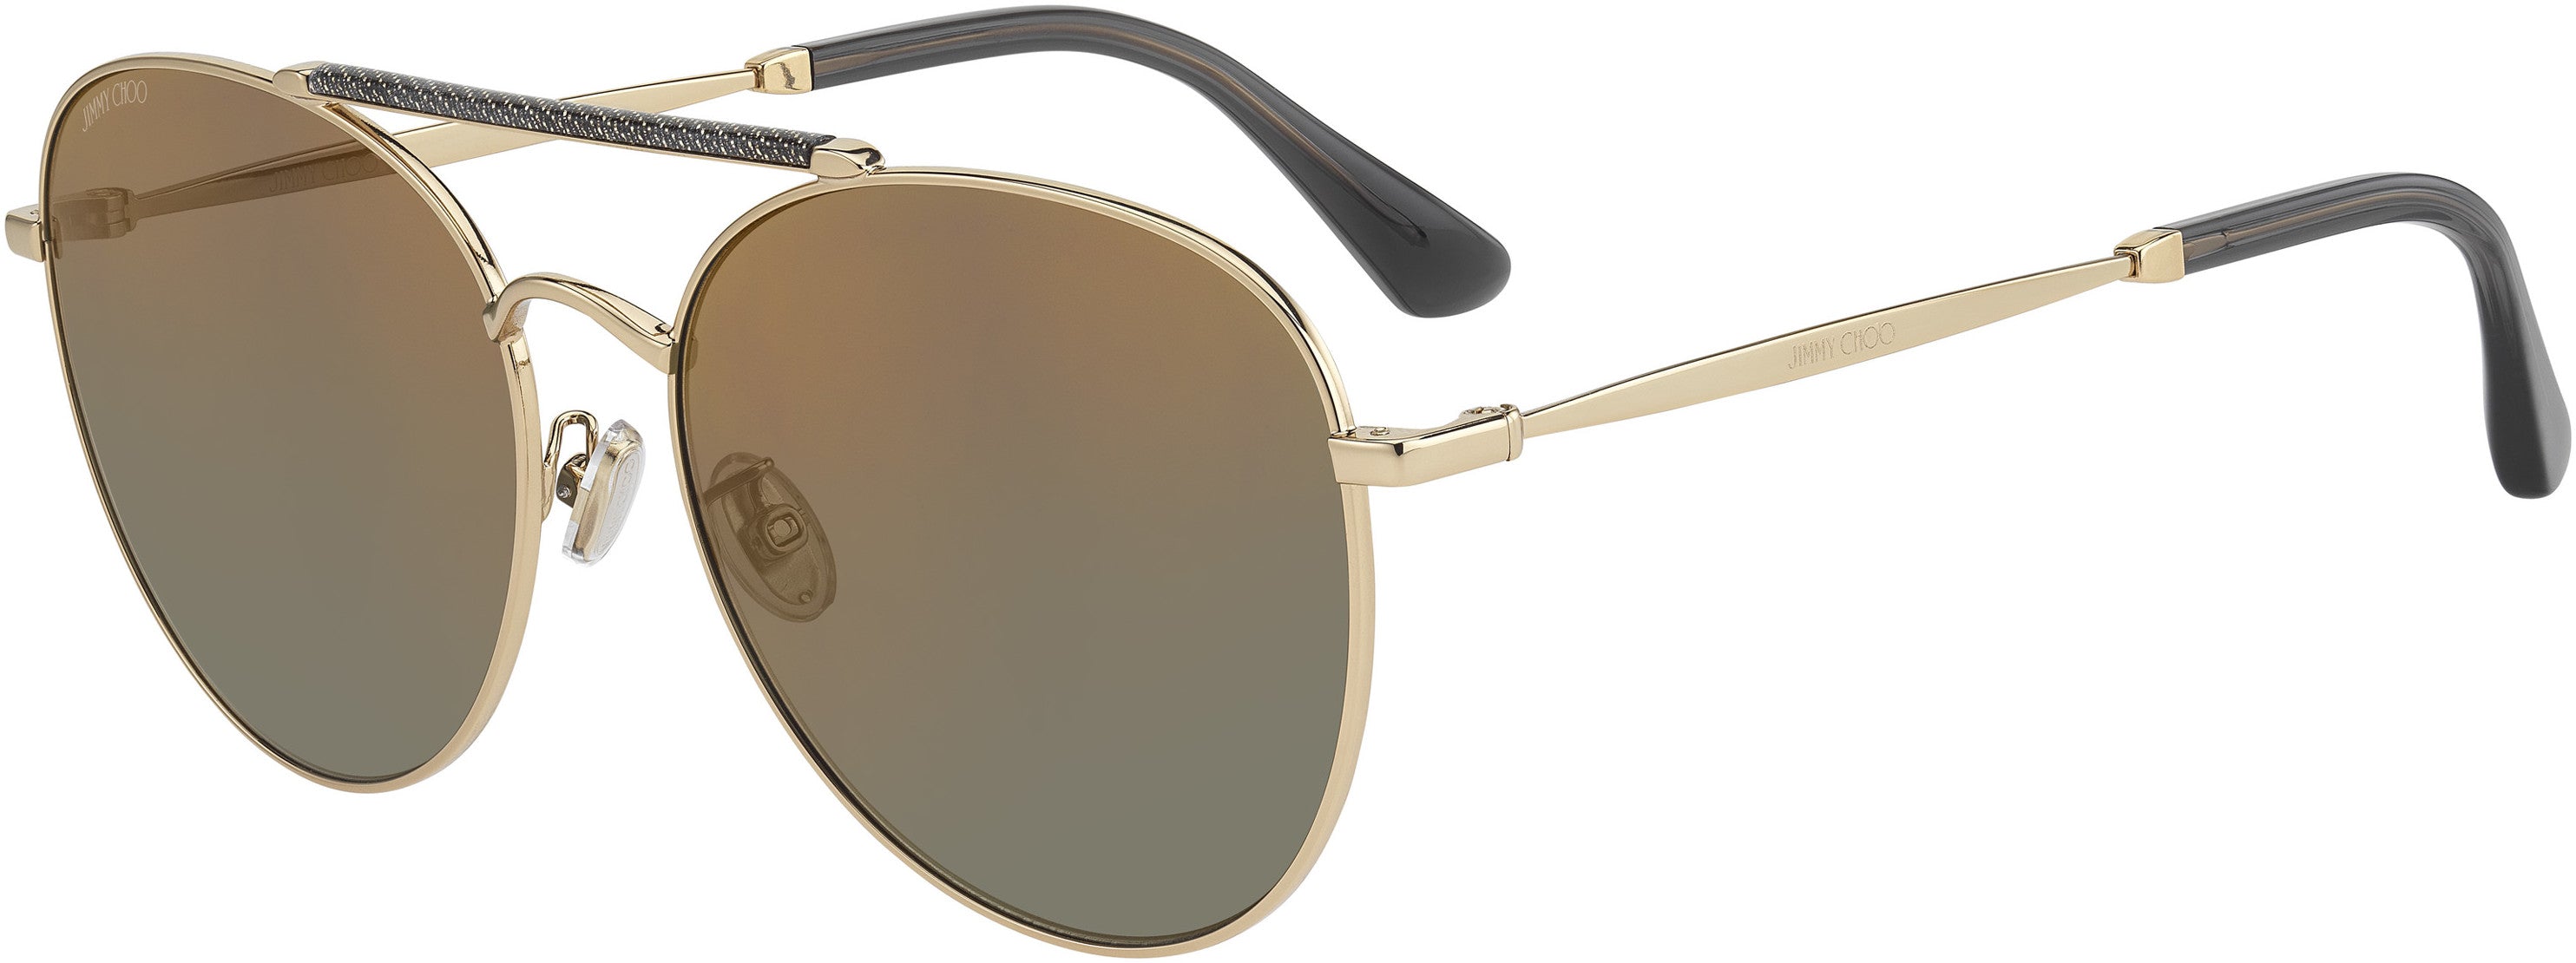 Jimmy Choo Abbie/G/S Aviator Sunglasses 0W8Q-0W8Q  Gold Glitter Gray (K1 Gold Mirror)